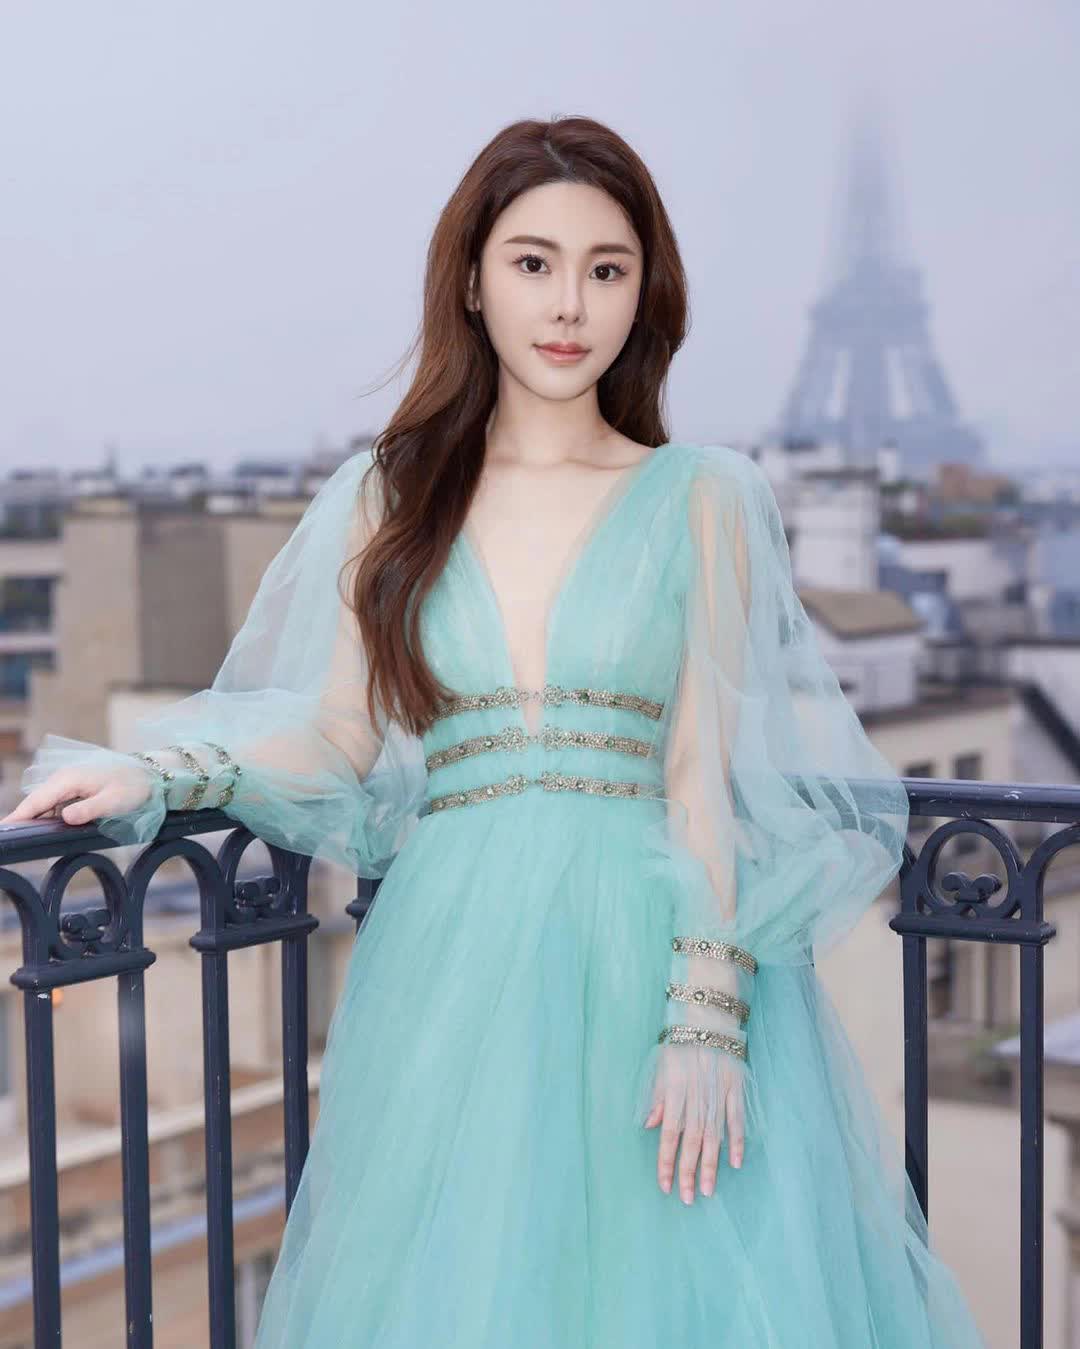 Profile nữ người mẫu 28 tuổi bị giết, phân xác thành nhiều phần: Biểu tượng thời trang, có mối liên hệ đặc biệt với vợ Quách Phú Thành - Ảnh 2.